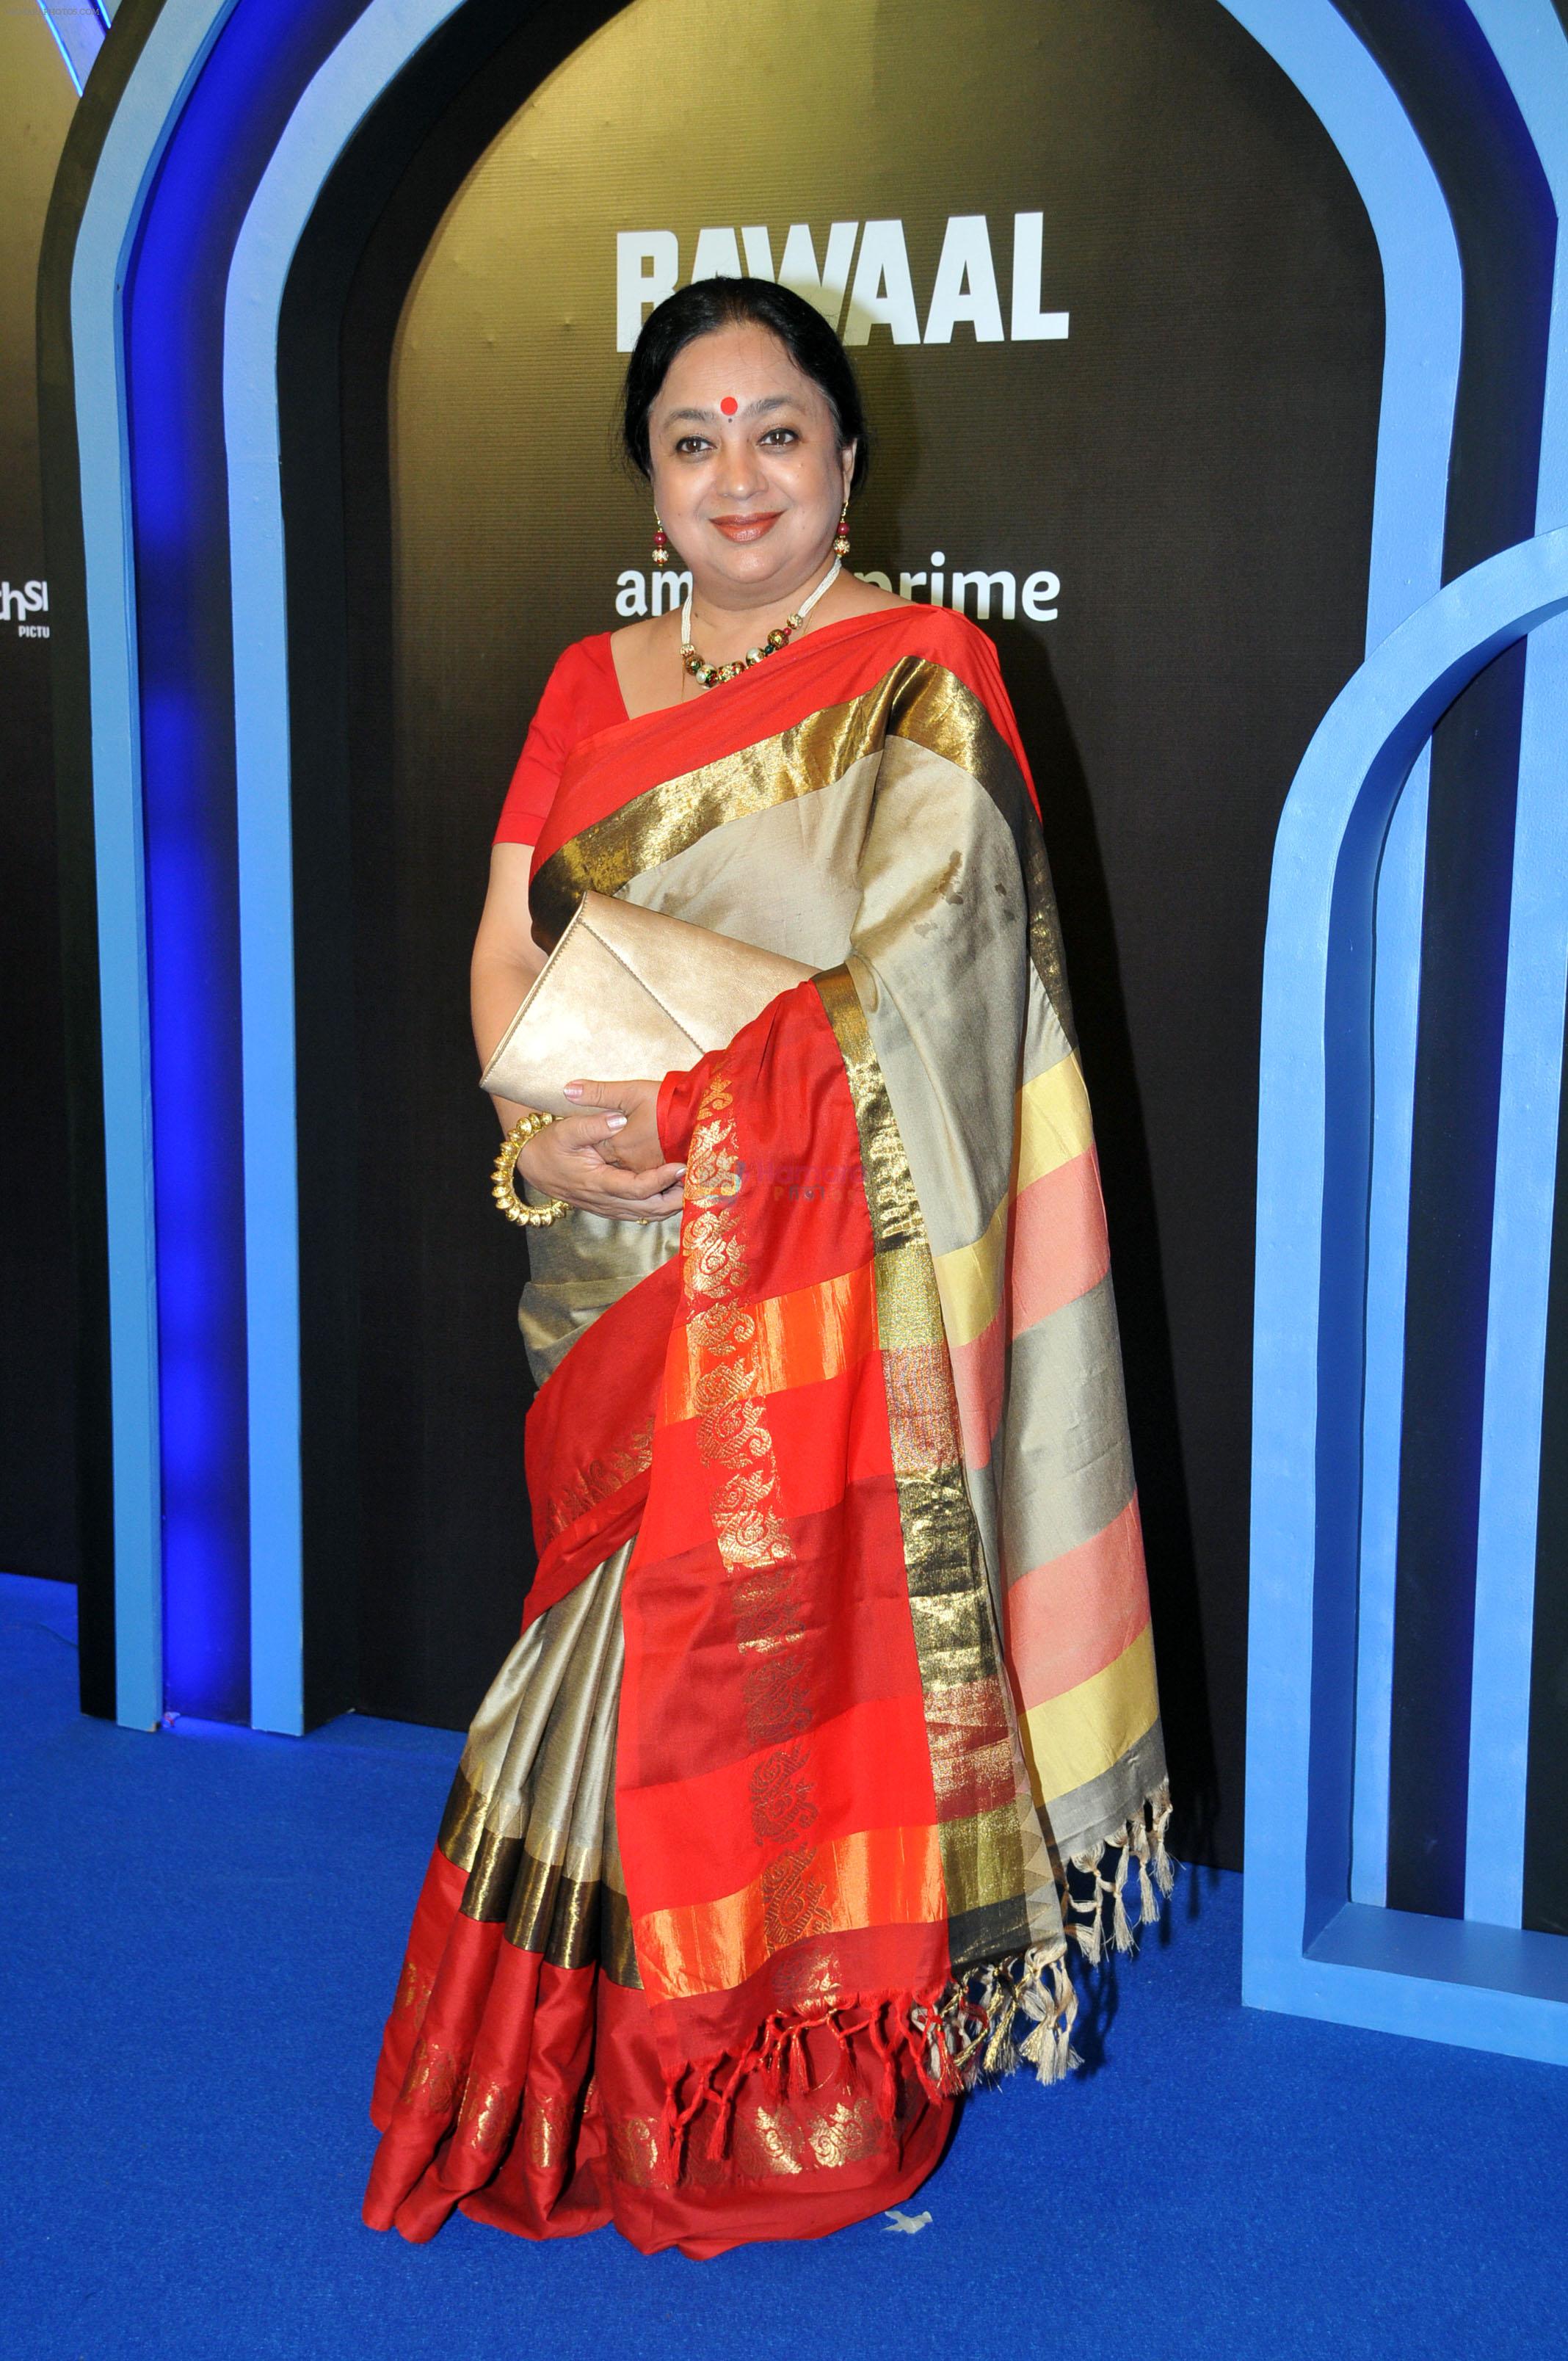 Anjuman Saxena at Bawaal movie premiere on 18 July 2023